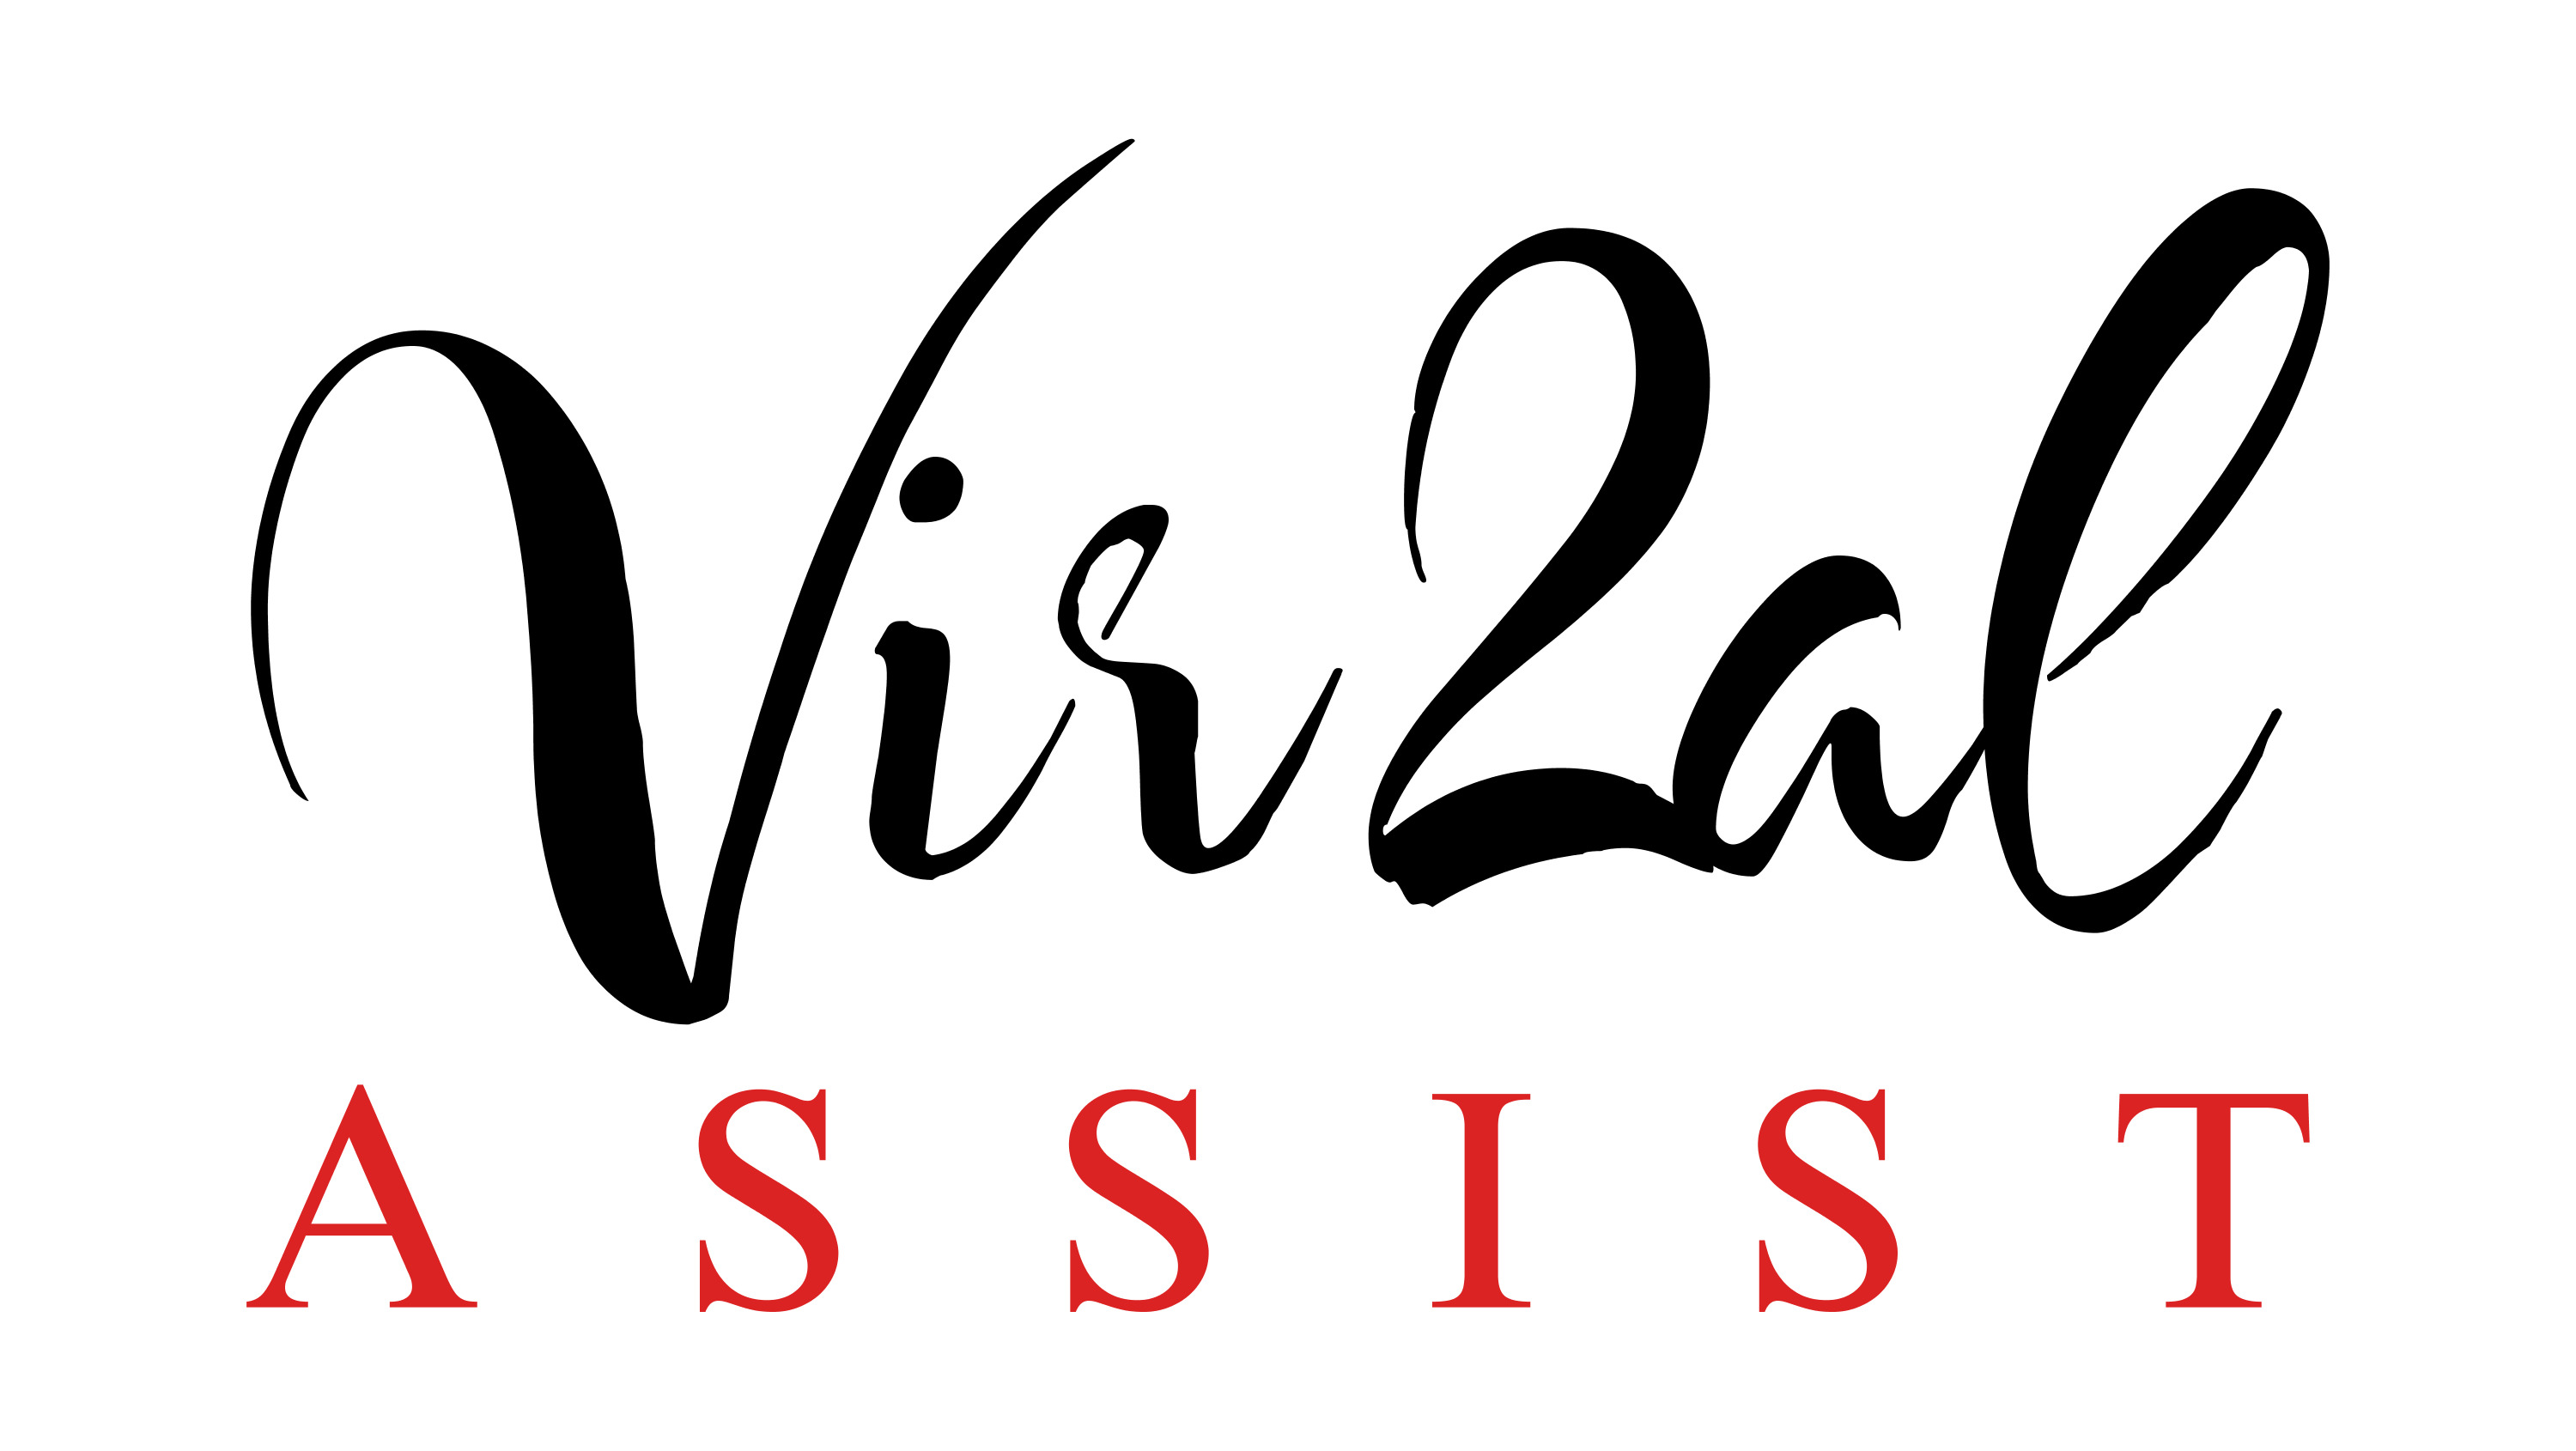 Vir2al Assist Logo